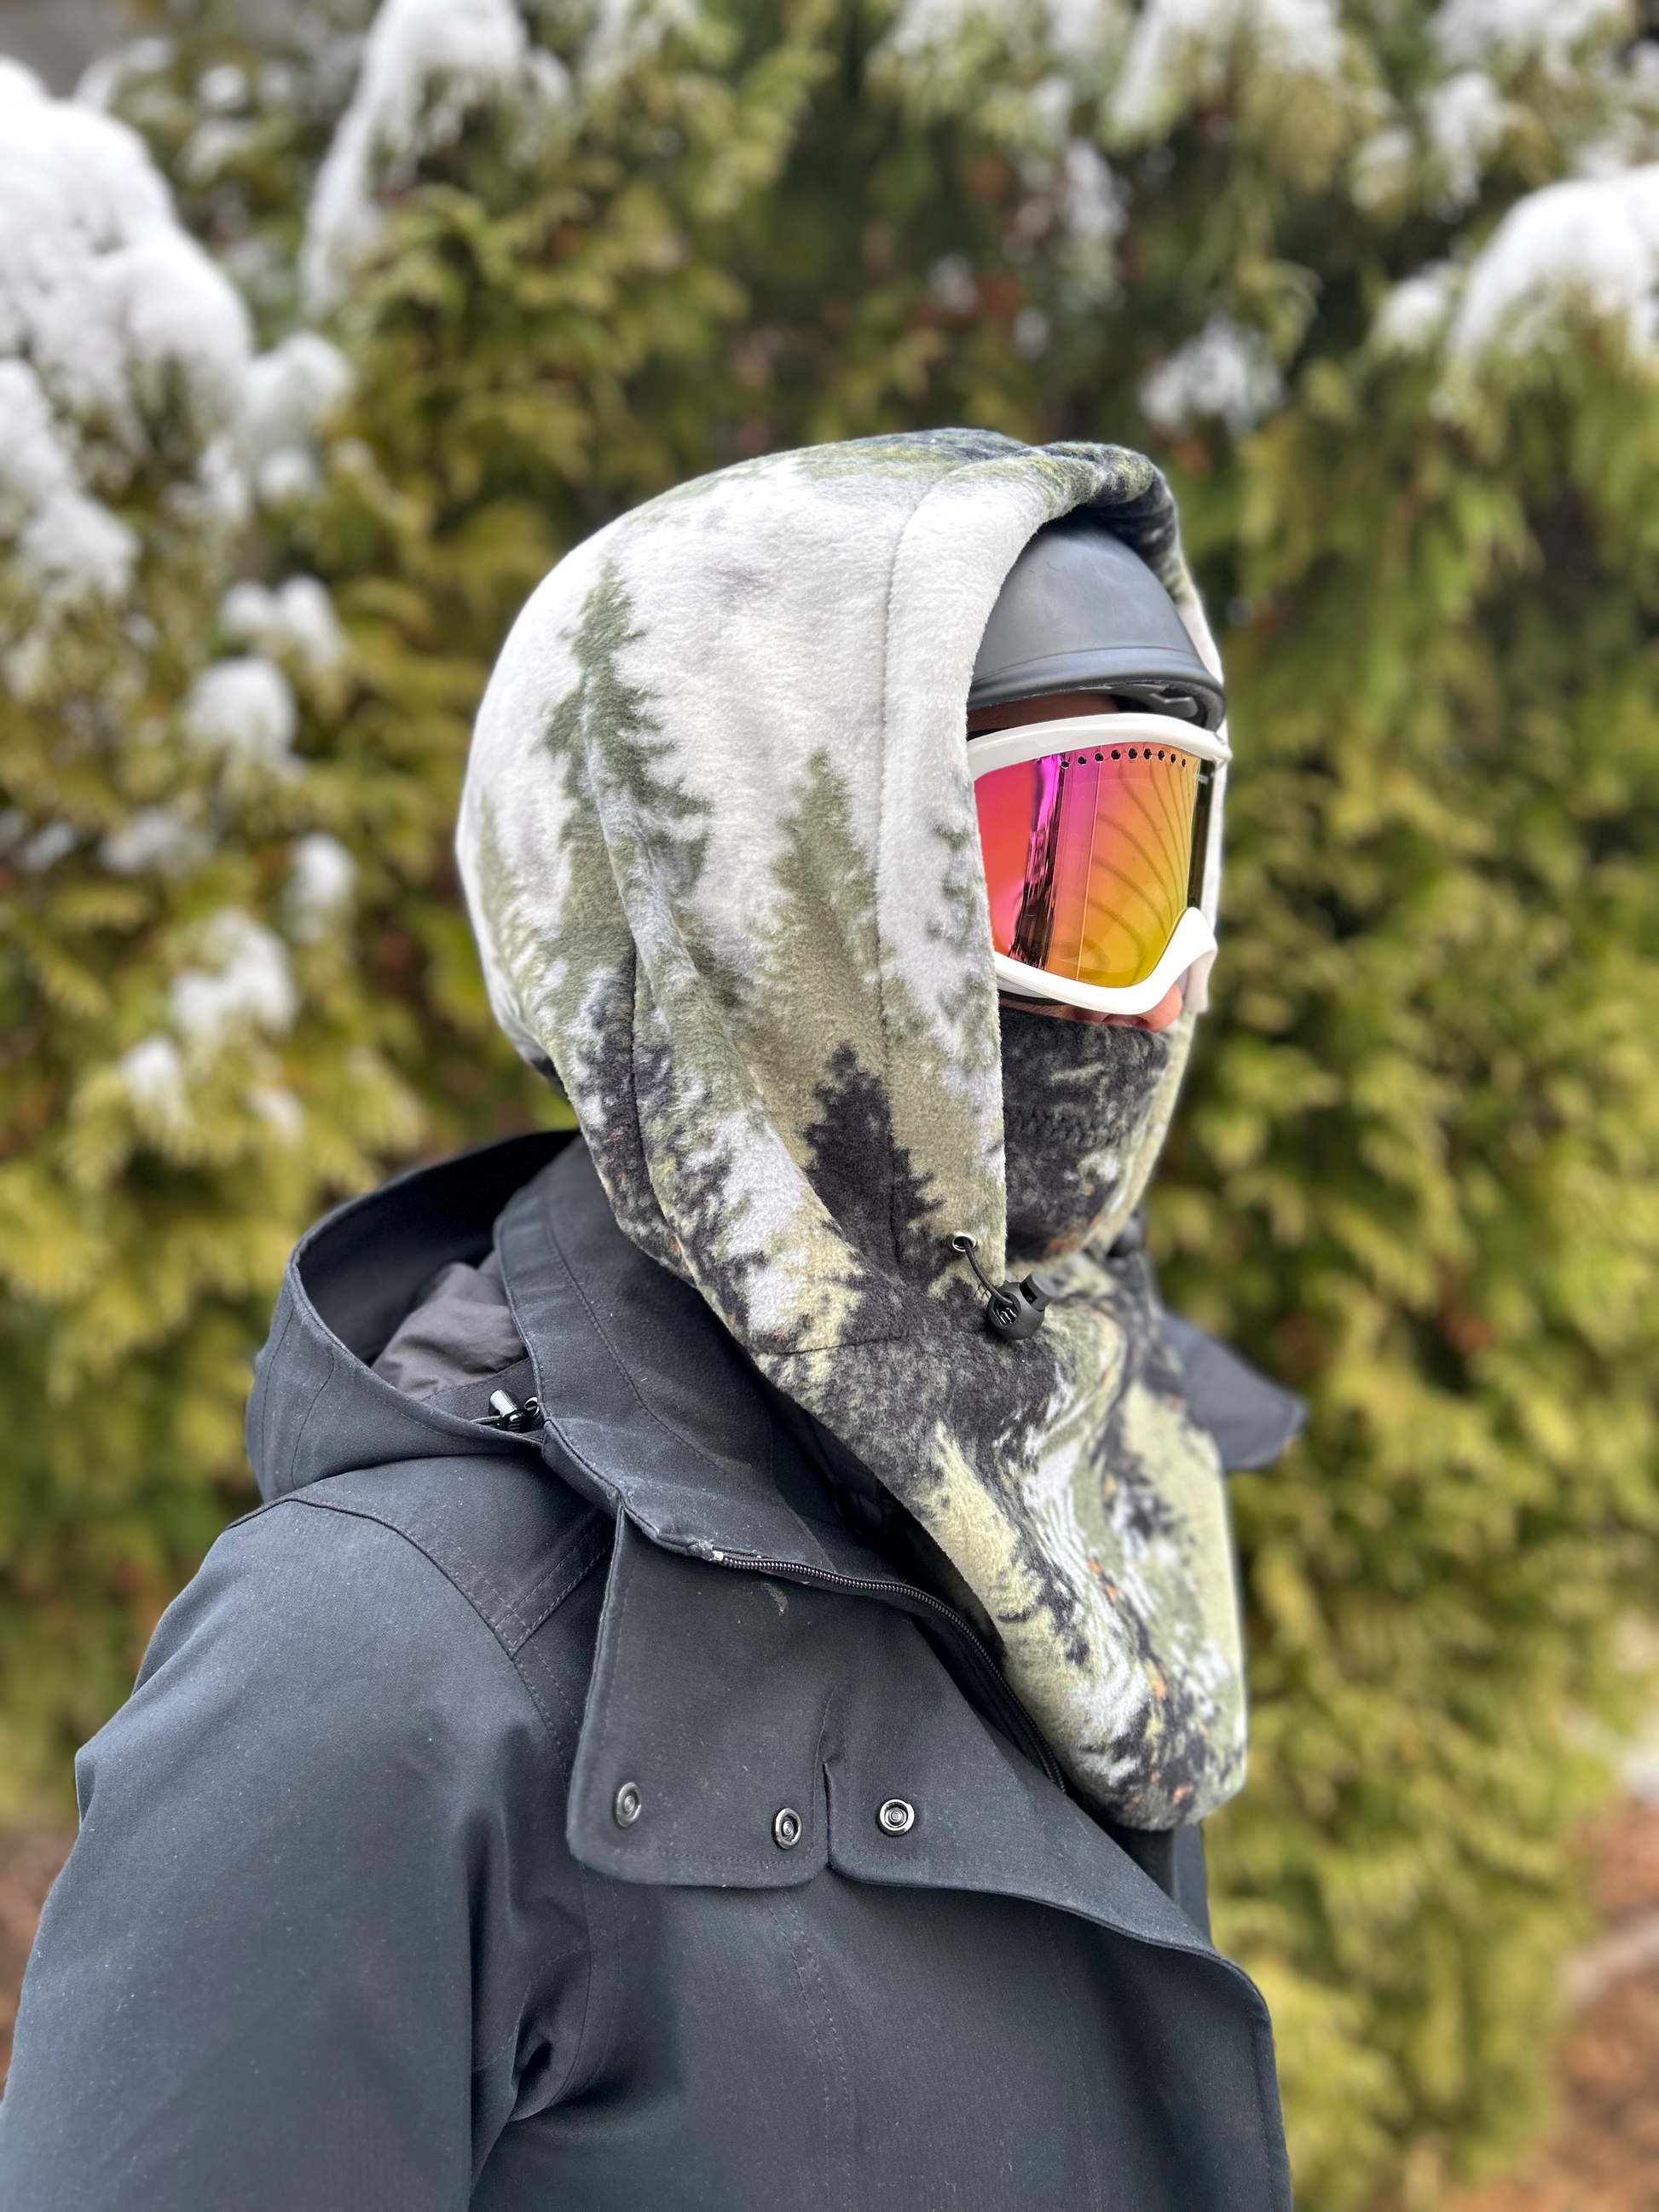 Forest Helmet Hood, Fleece Ski Hood, balaclava, snood, Over Helmet.